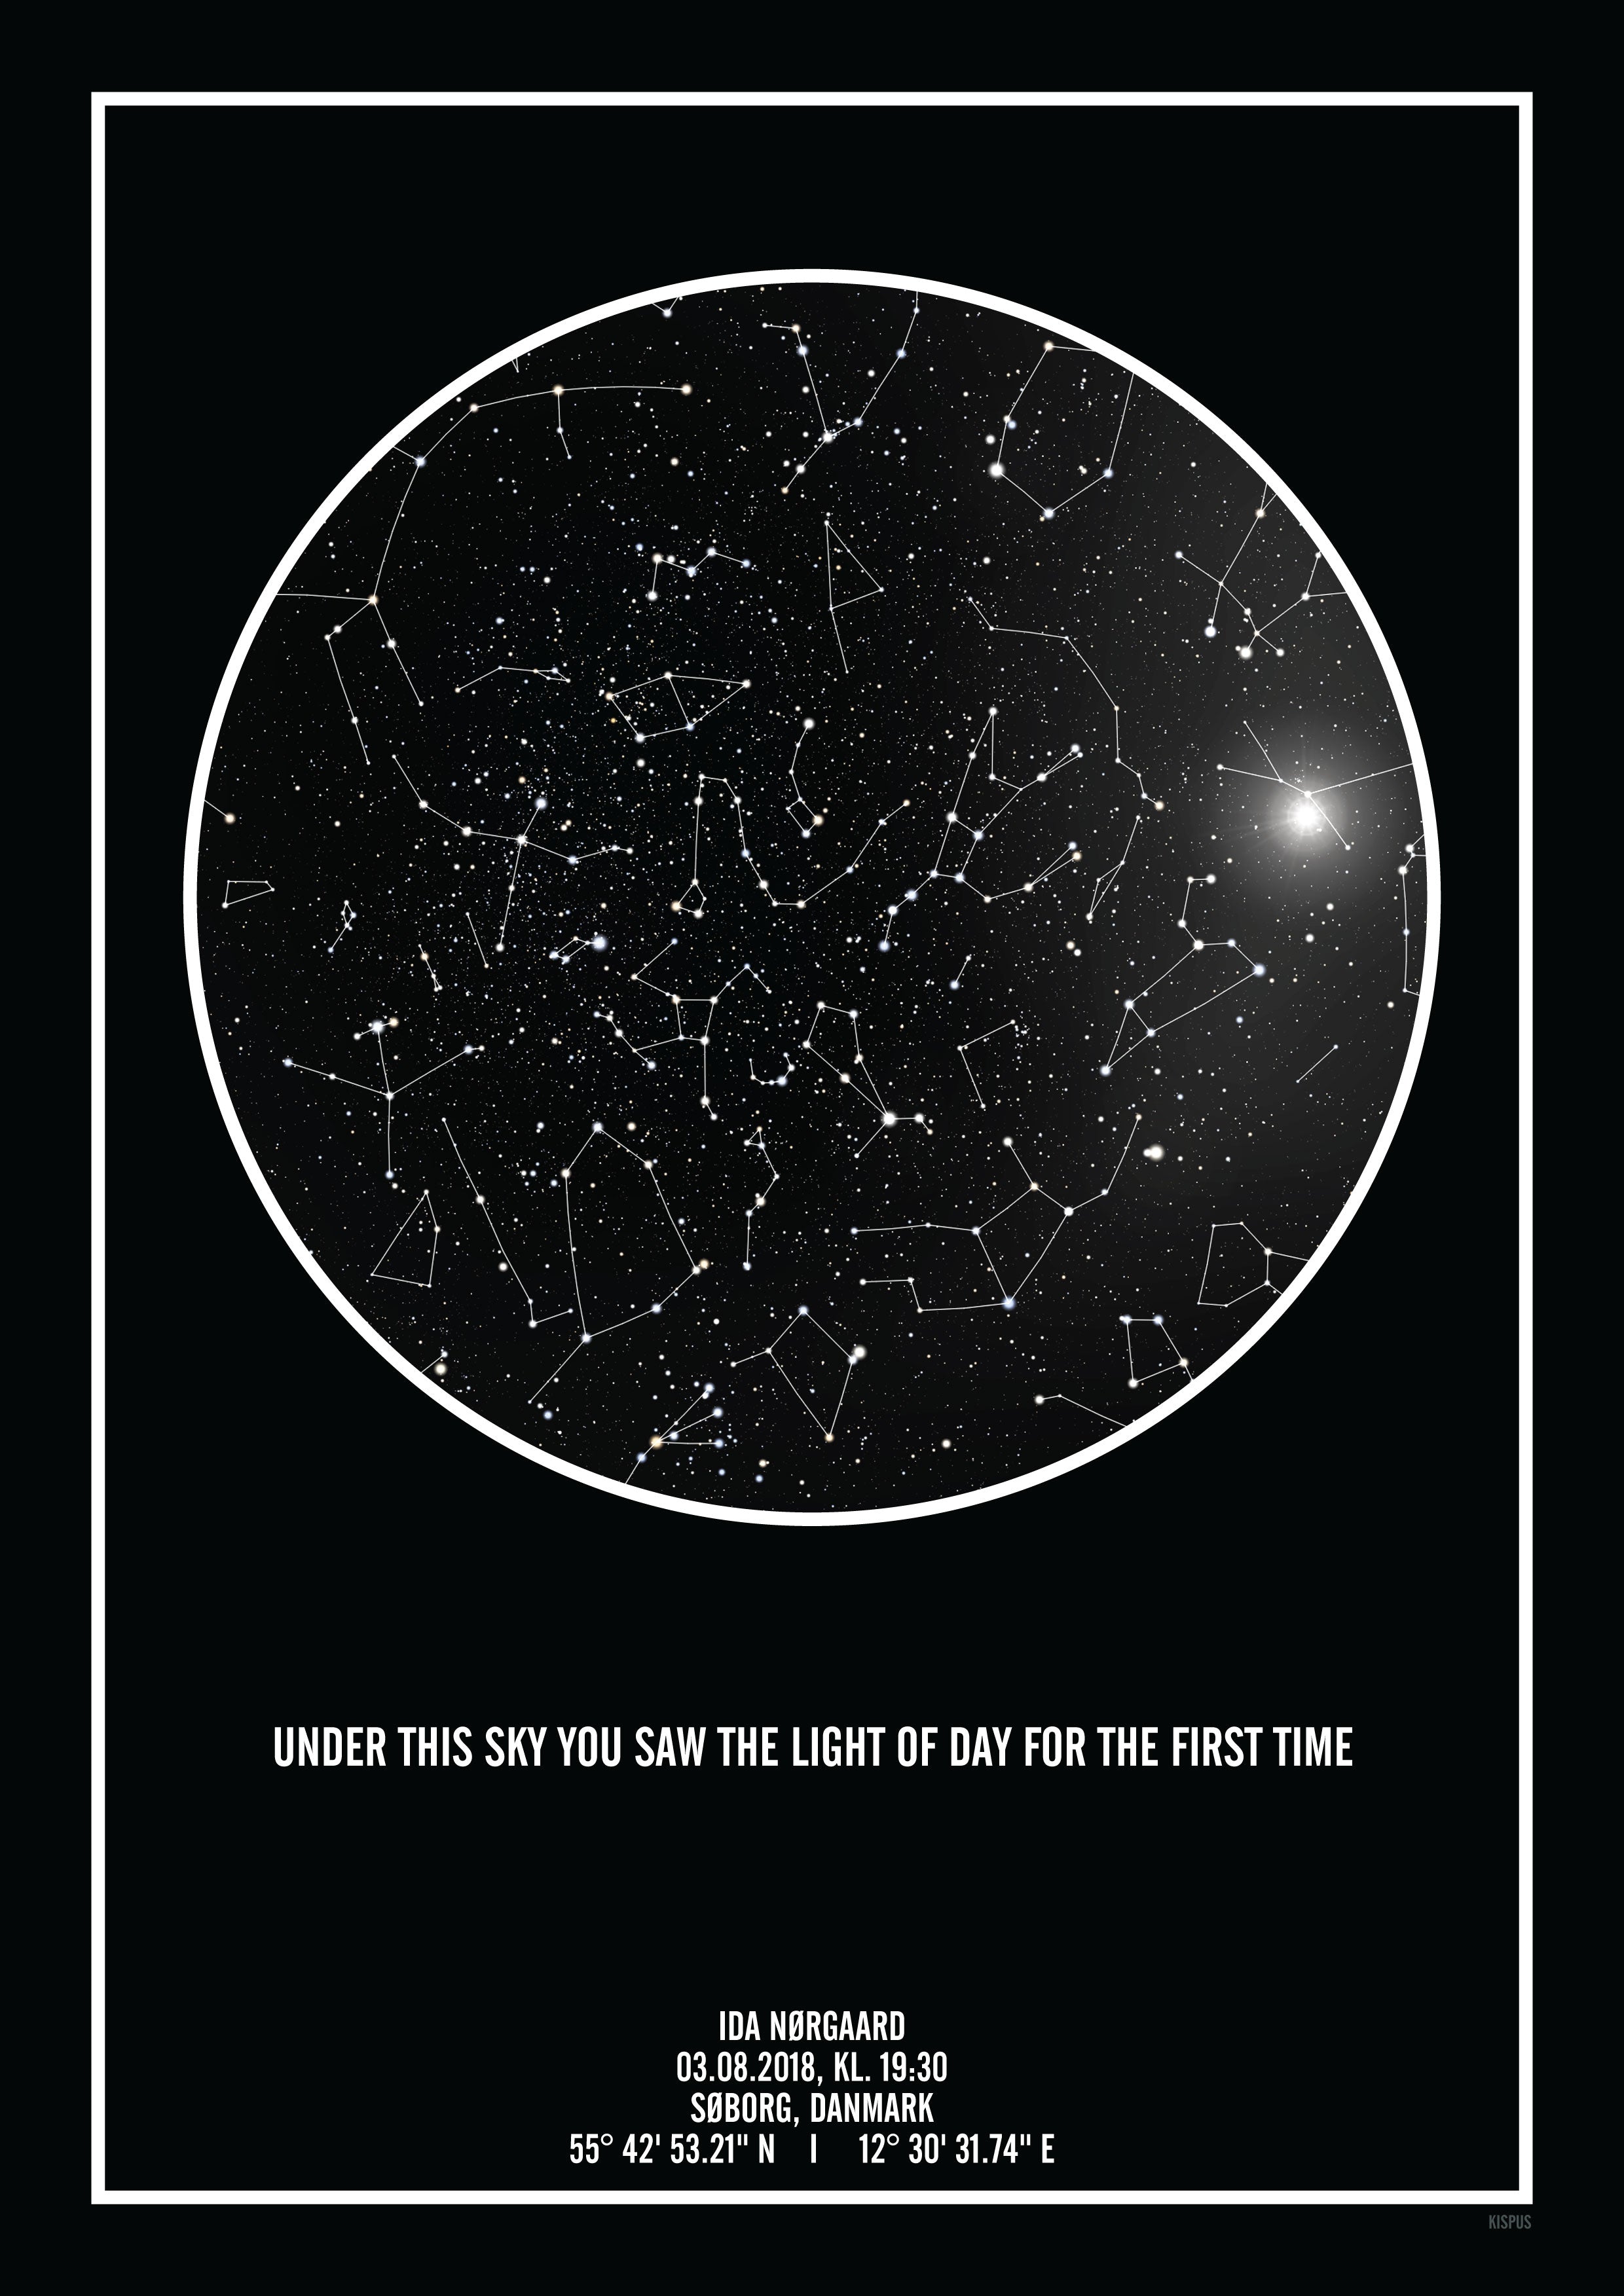 Se PERSONLIG STJERNEHIMMEL PLAKAT (SORT) - A4 / Stjernehimmel med stjernebilleder hos KISPUS